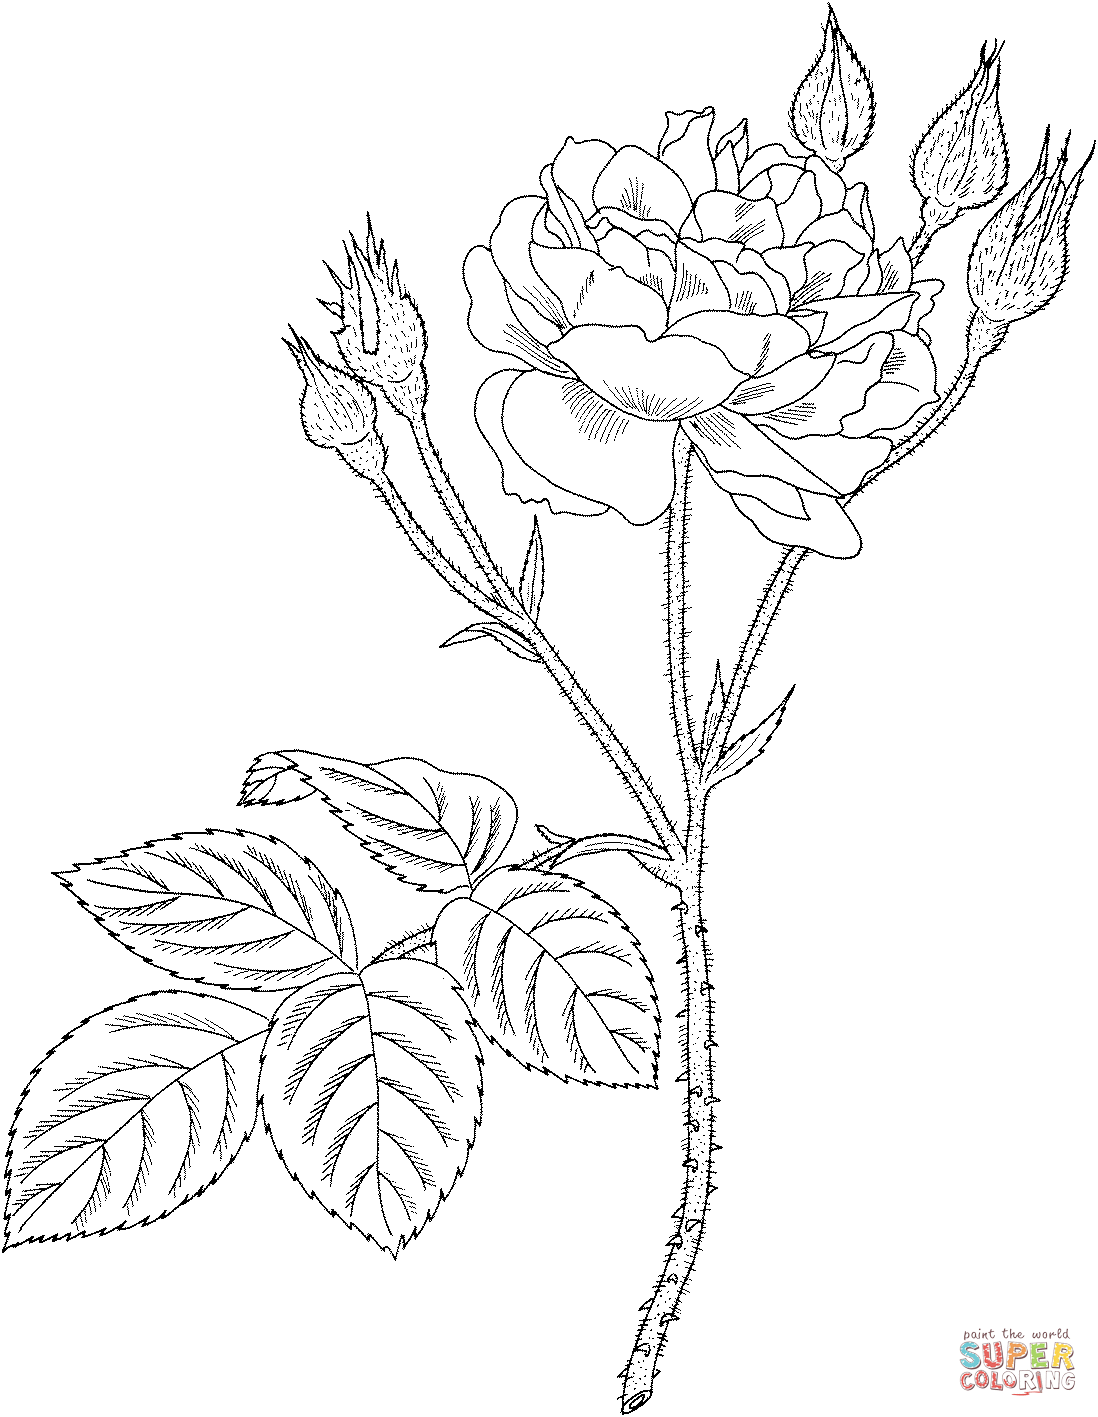 Communis أو الطحلب المشترك أو الطحلب الوردي القديم من الورود